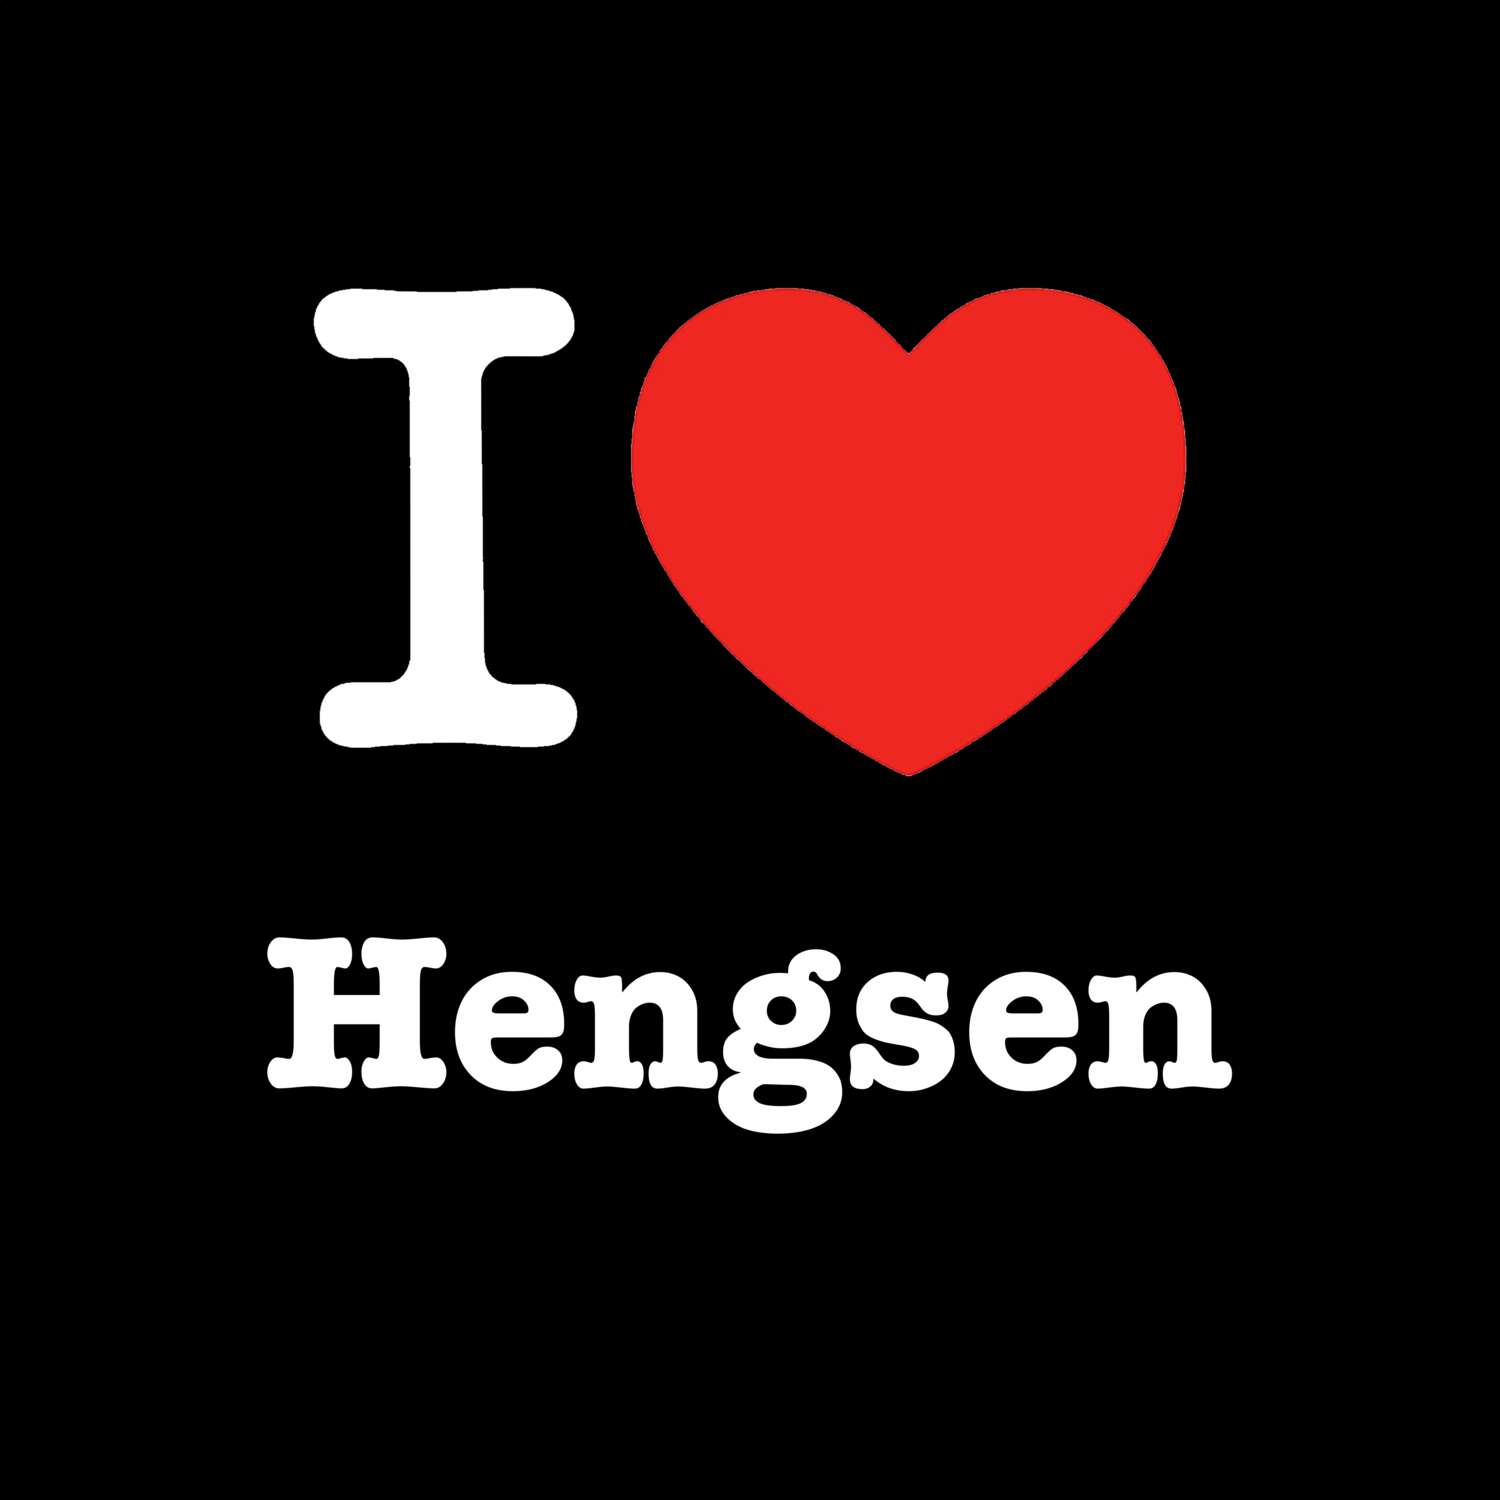 Hengsen T-Shirt »I love«